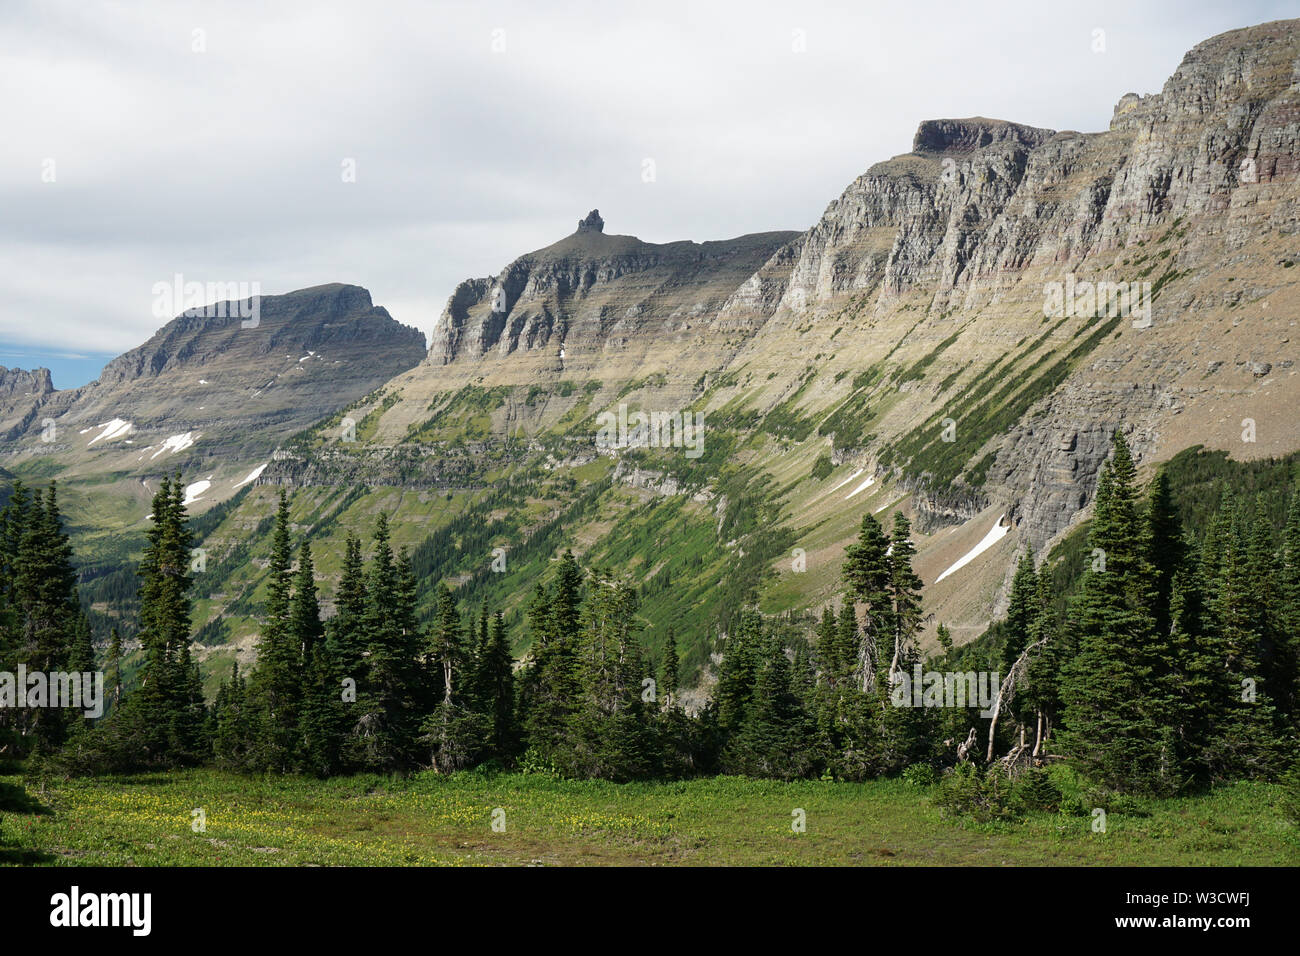 Il muro del giardino, una arete glaciale nel Parco Nazionale di Glacier, Montana. La roccia è parte della roccia sedimentaria Proterozoic supergruppo della cinghia. Foto Stock